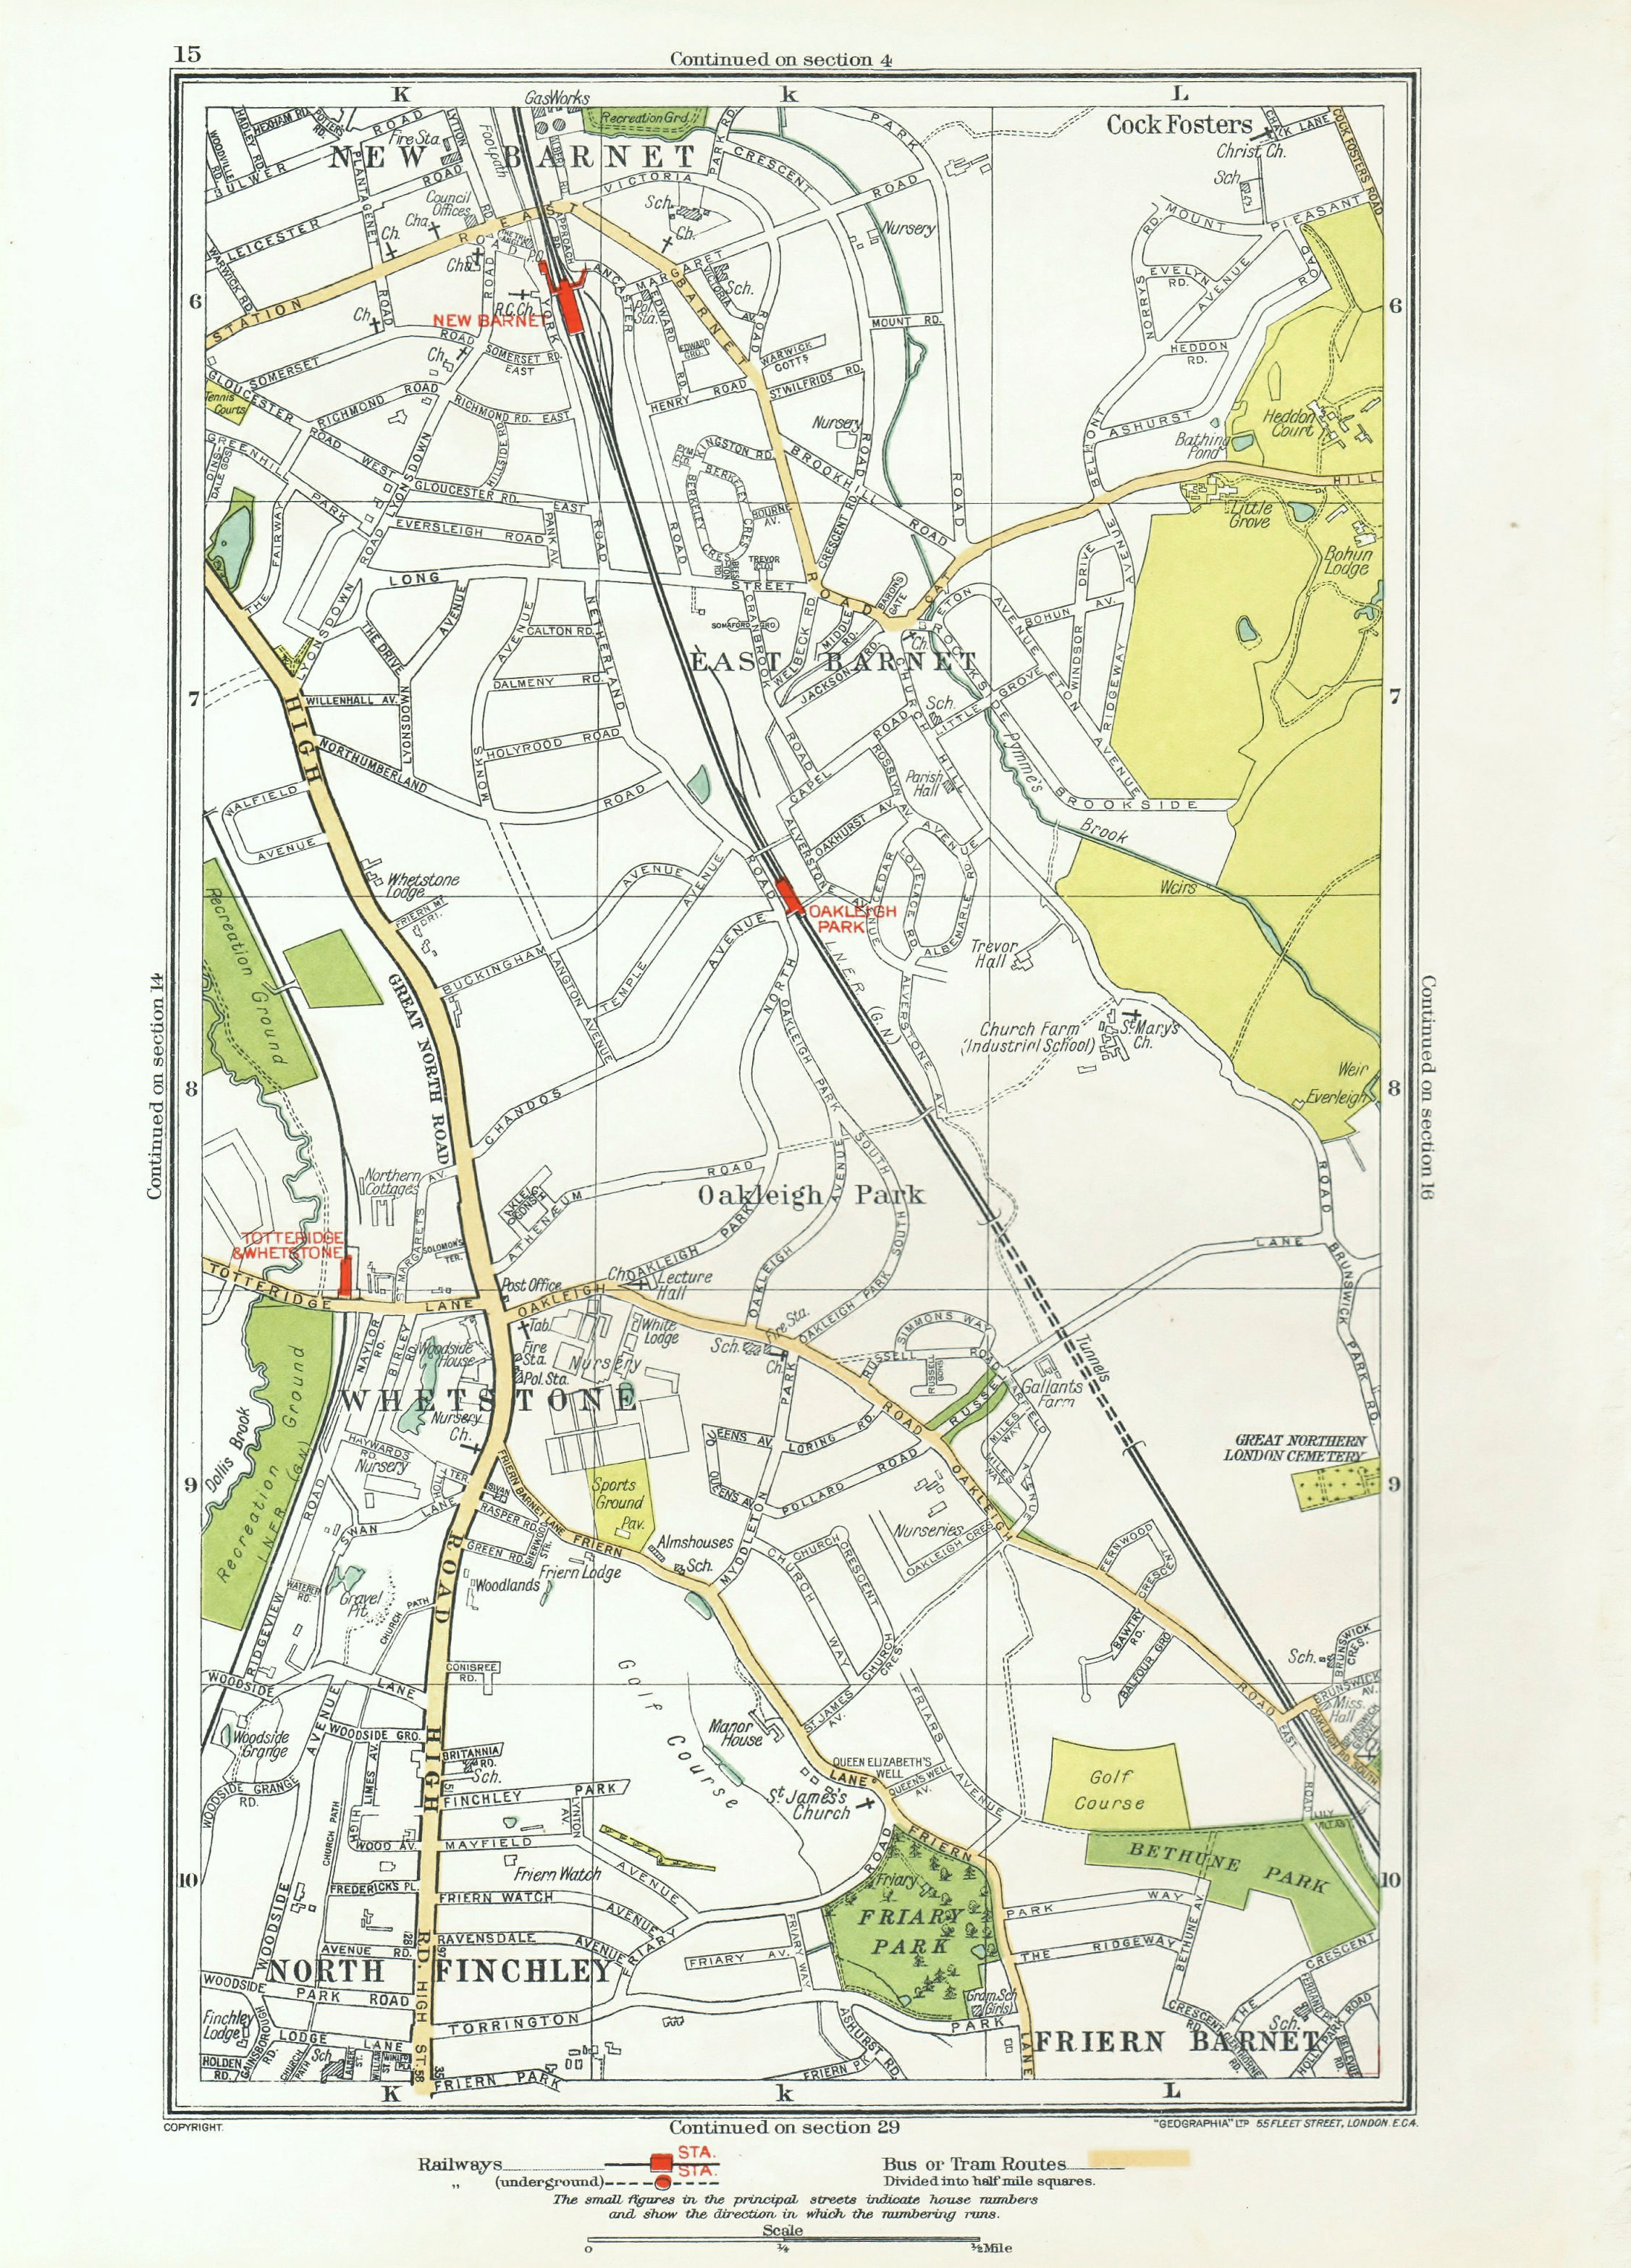 EAST BARNET. Friern Barnet;Whetstone Finchley Cockfosters Totteridge 1933 map